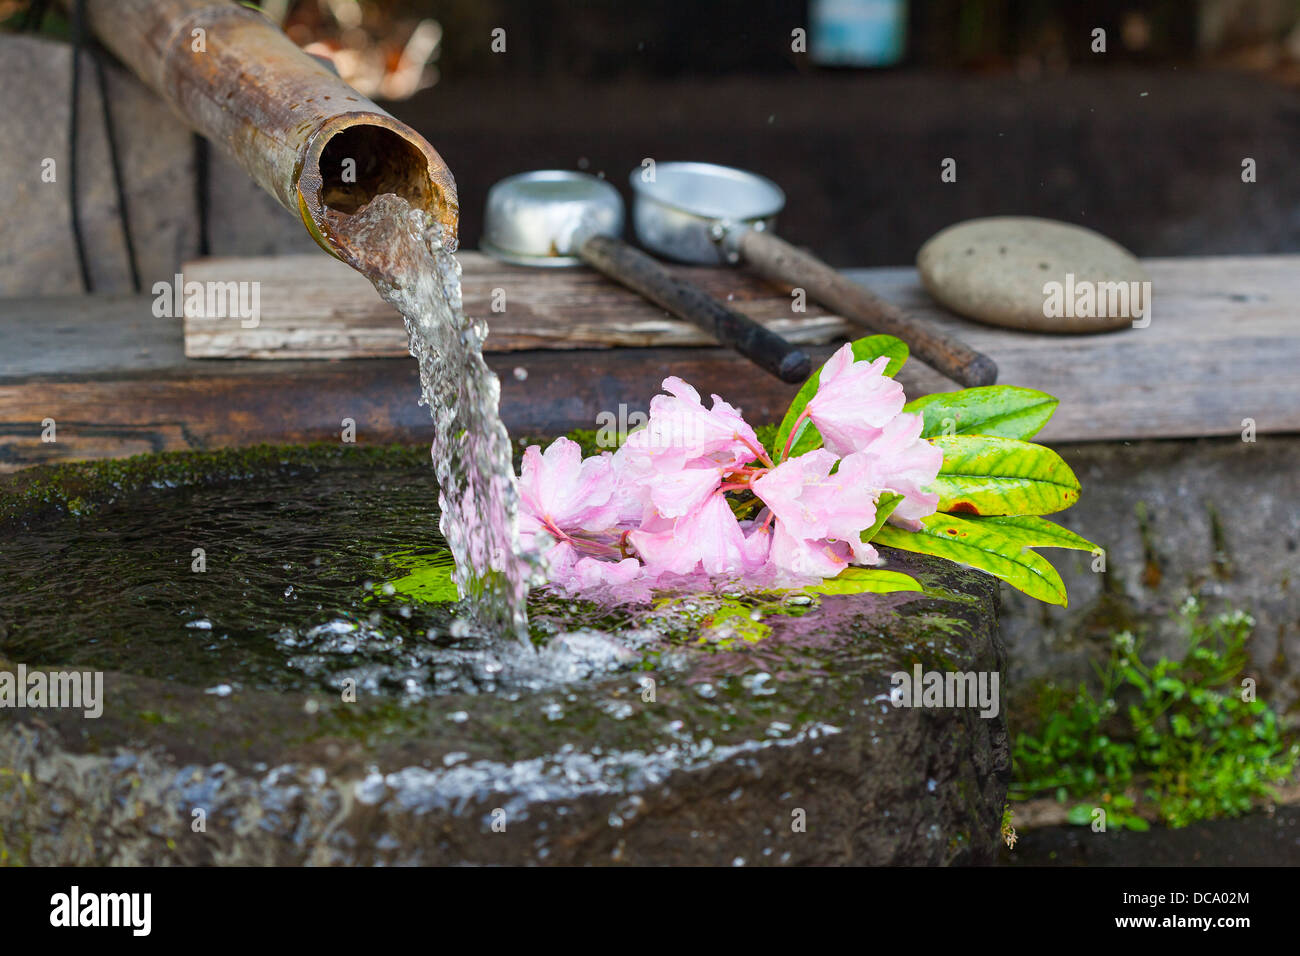 L'eau, bassin japonais appelé tsukubai, alimenté par une conduite d'eau,  bambou ou kakei. Rhododendron rose fleurs flottent dans l'eau Photo Stock -  Alamy